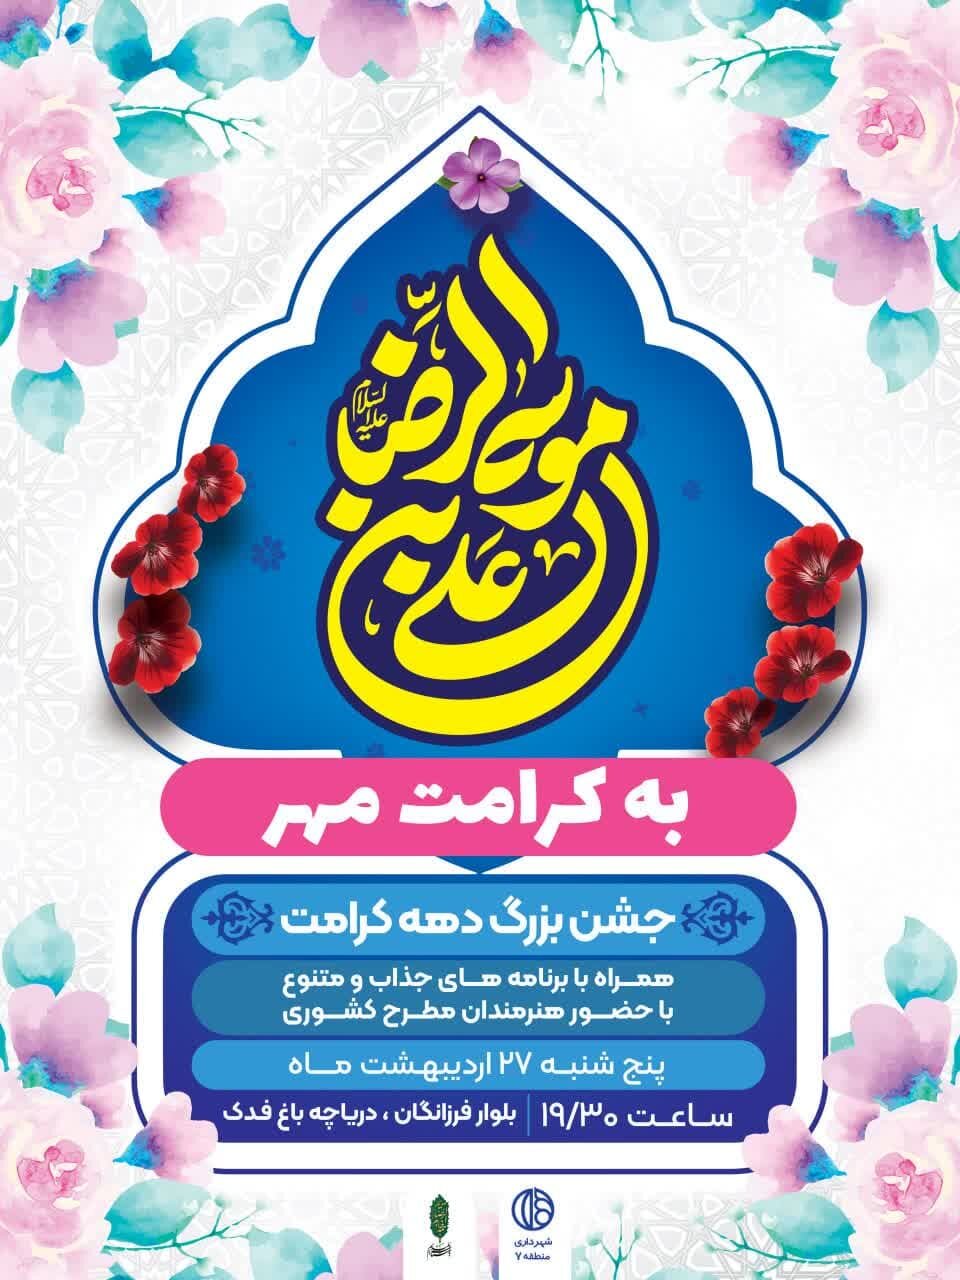 برپایی چایخانه حضرت رضا (ع) در ۱۰ محله منطقه ۷ اصفهان/ برگزاری جشن بزرگ «به کرامت مهر»